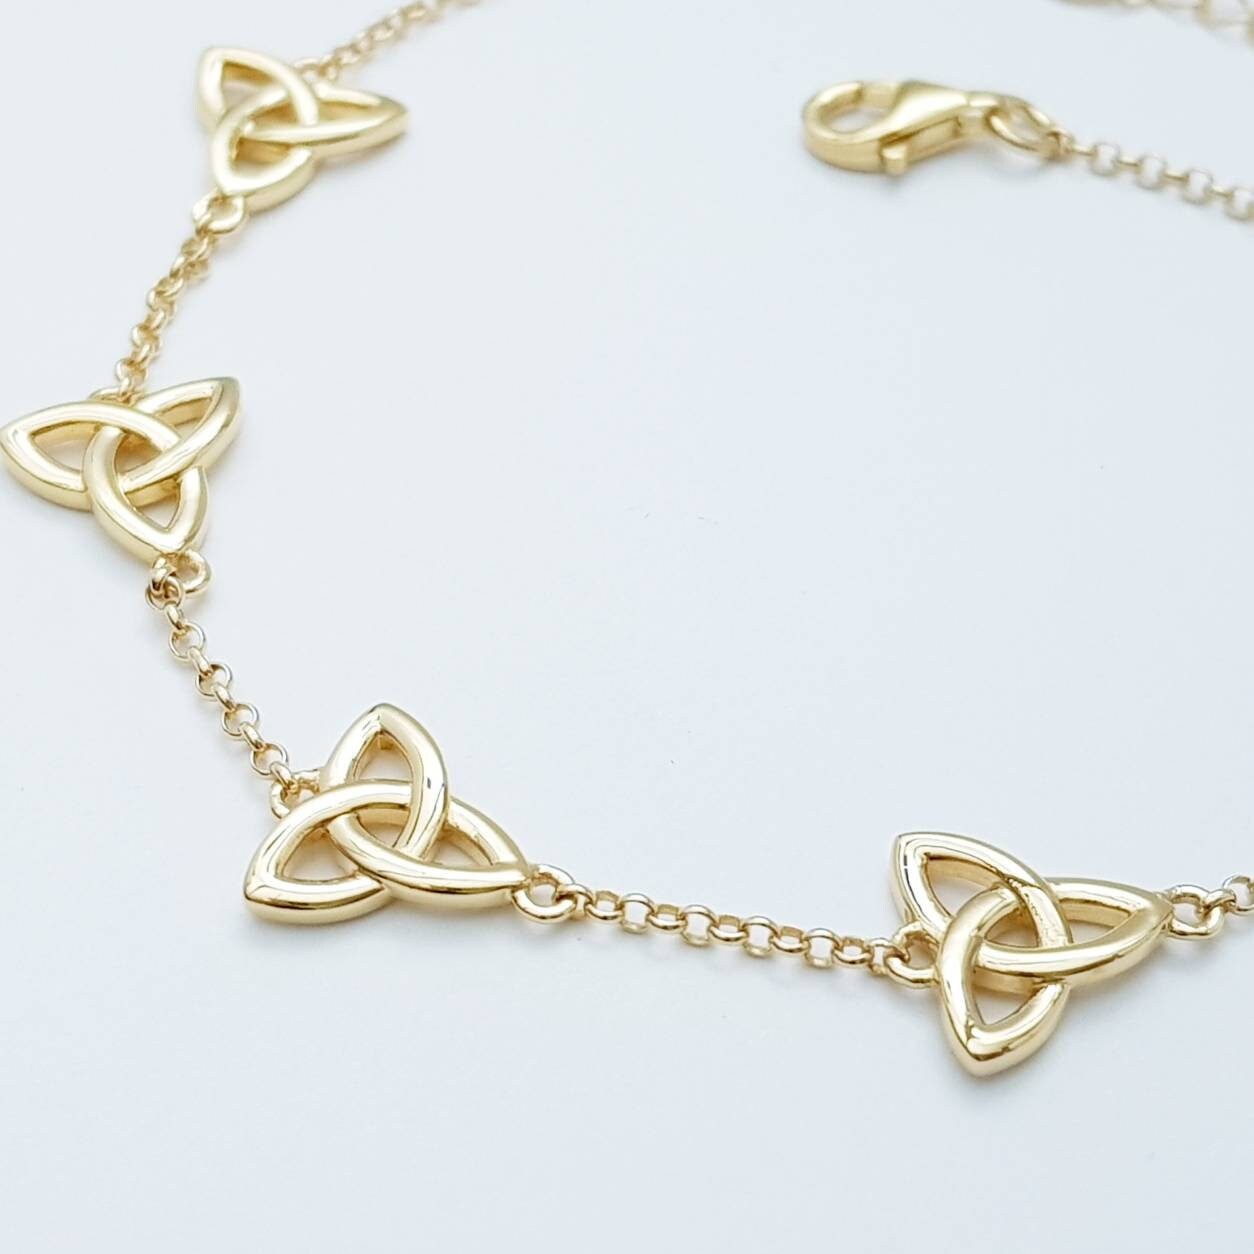 Celtic knot bracelet, small trinity knot bracelet, gold celtic bracelet